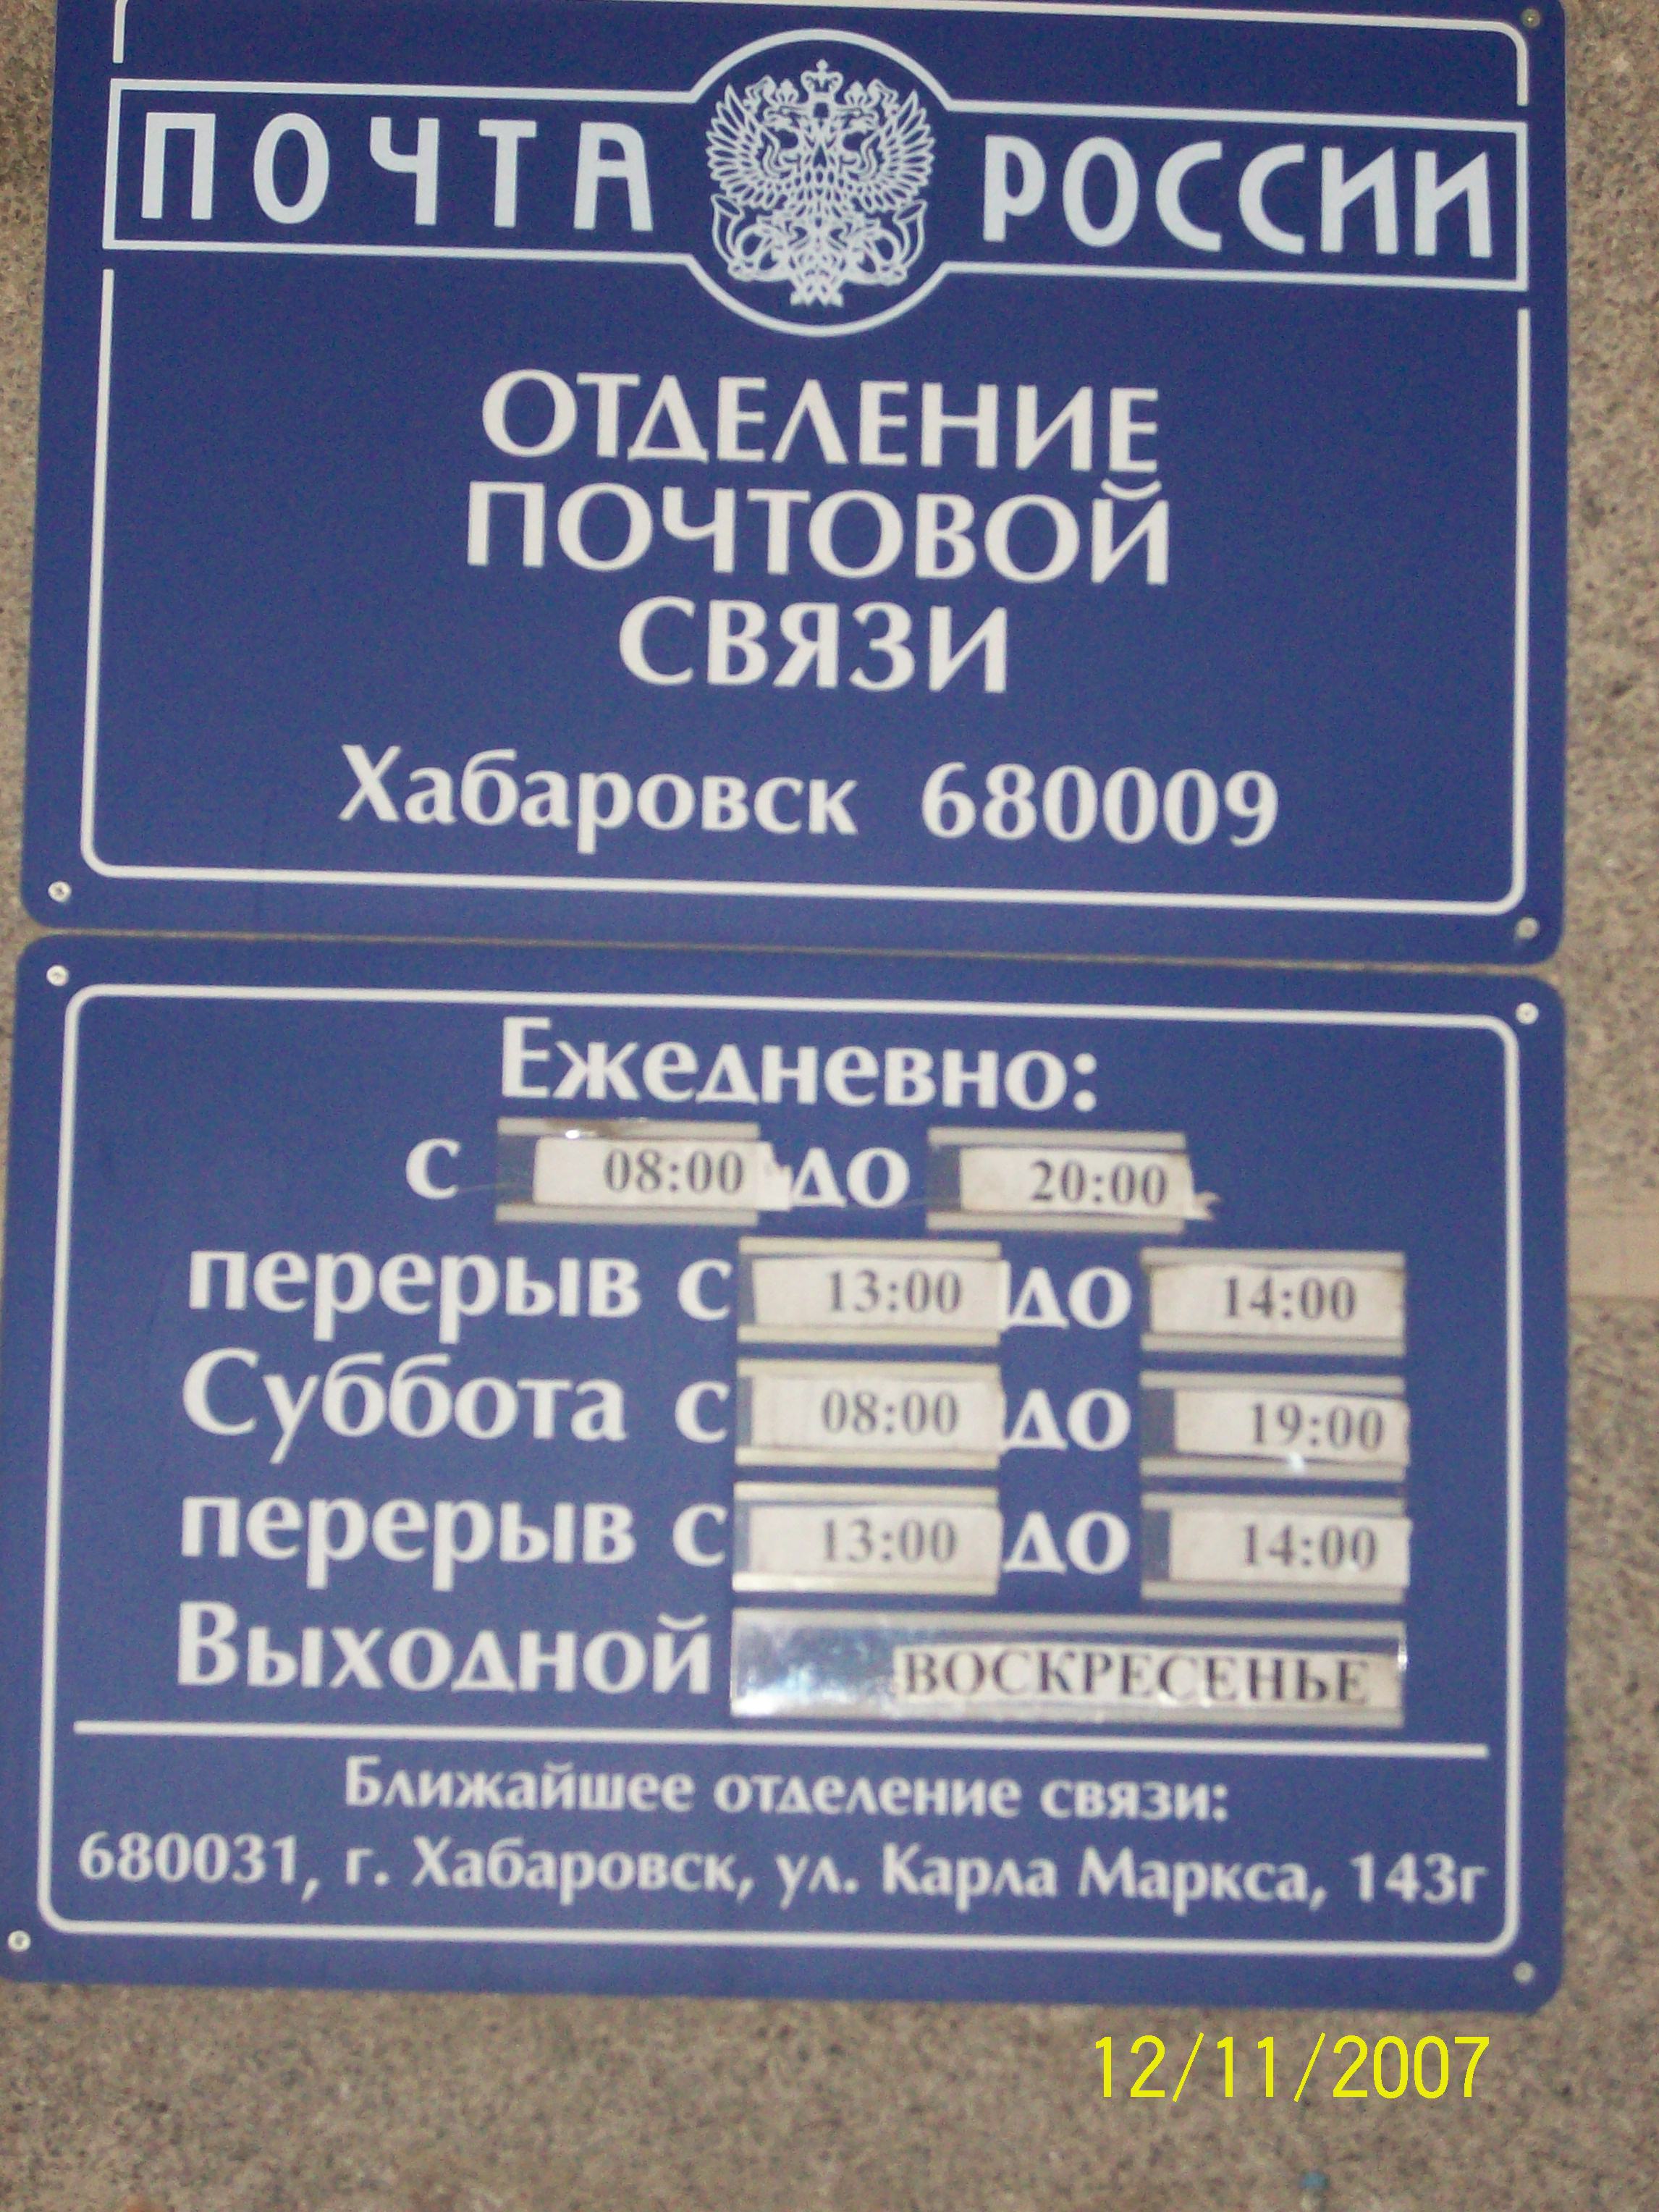 ФАСАД, отделение почтовой связи 680009, Хабаровский край, Хабаровск